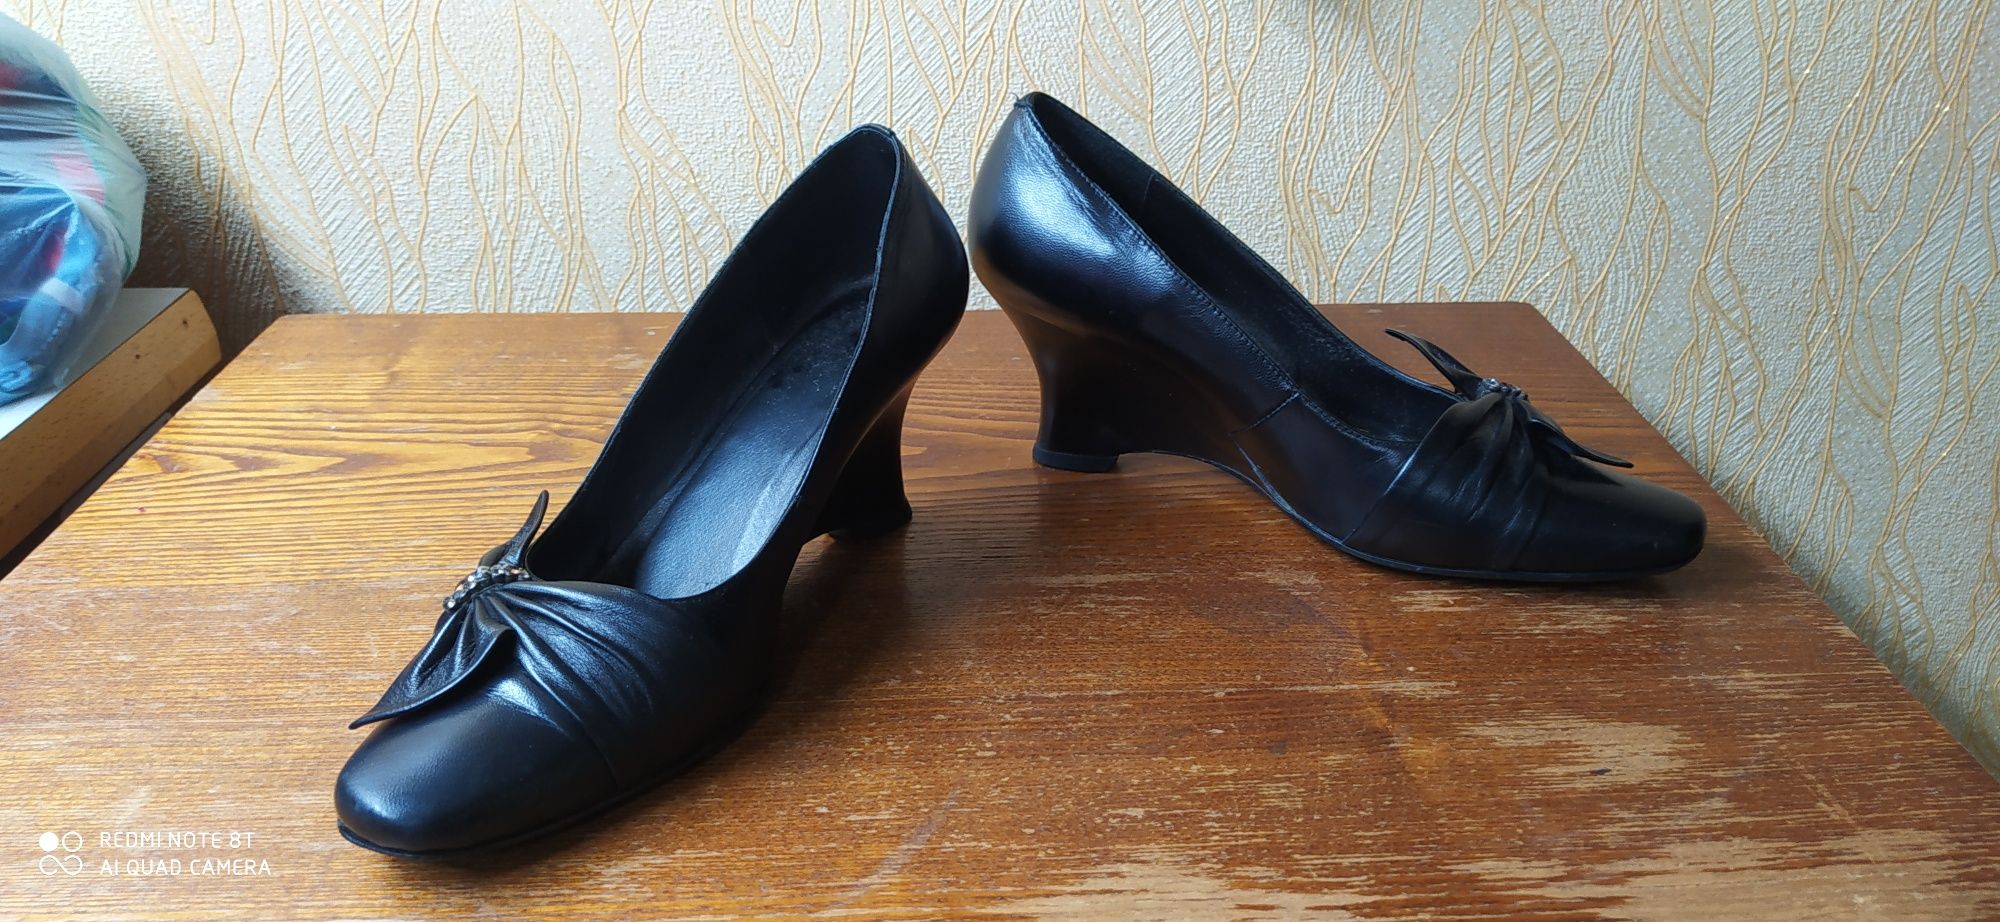 Продам женские туфли и босоножки 38р.